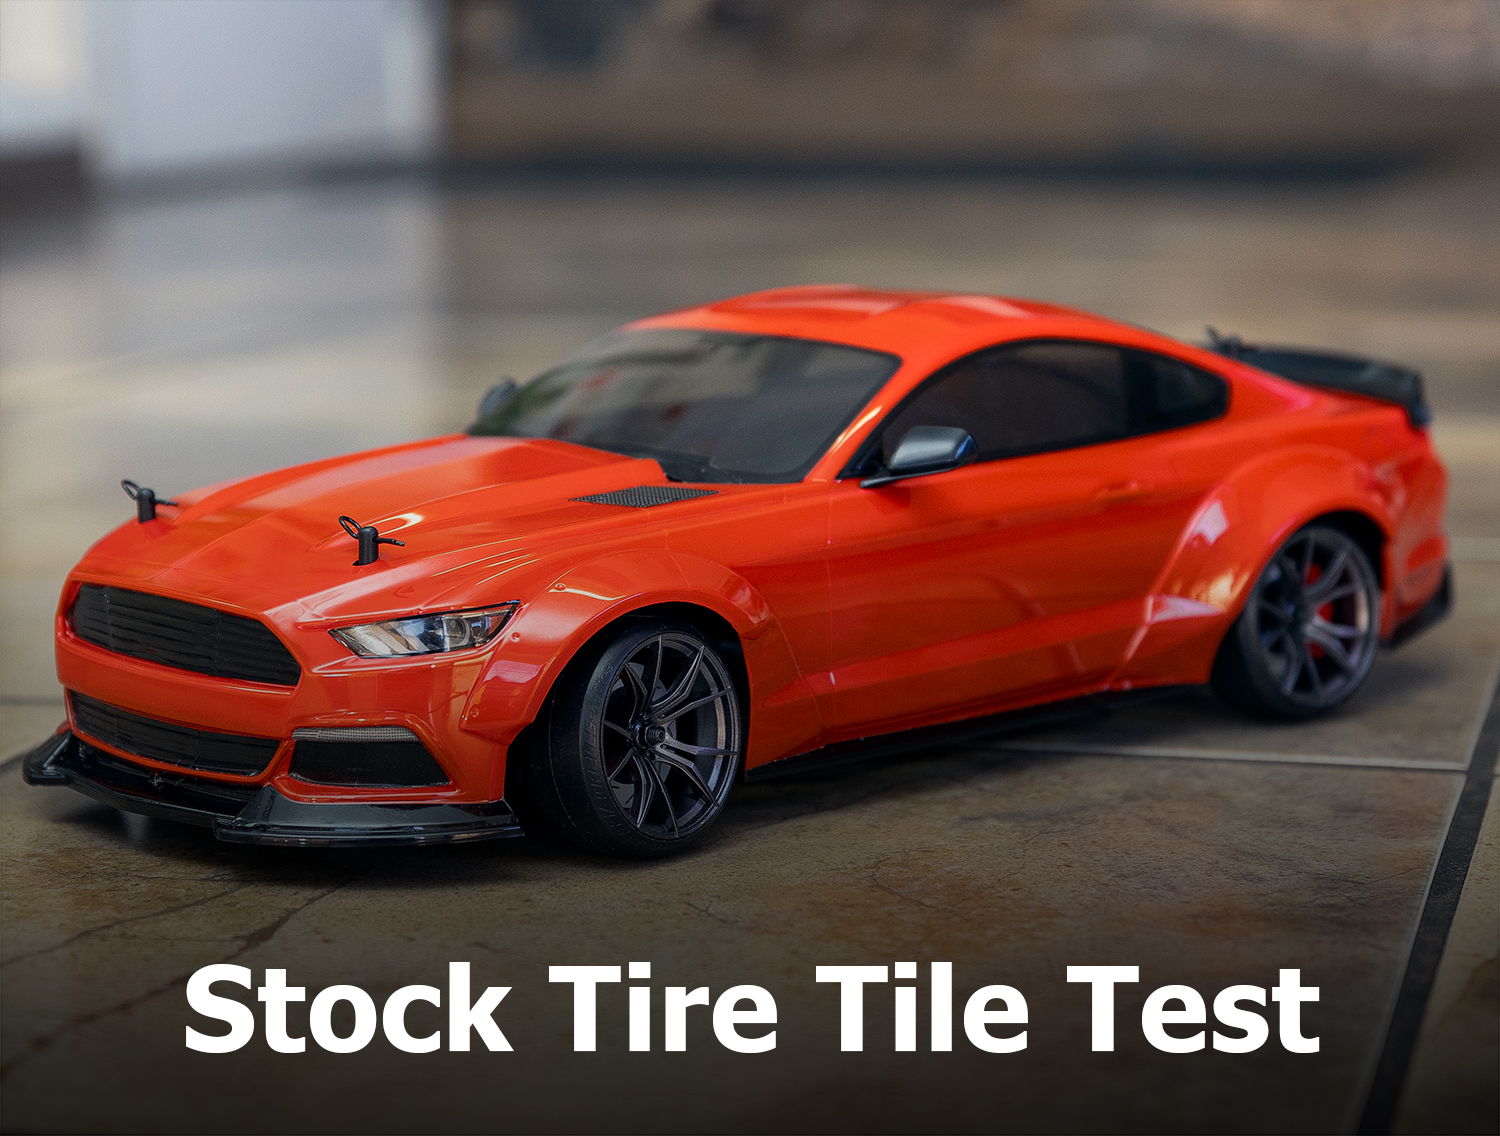 MST RMX 2.0 Stock Tire Tile Test